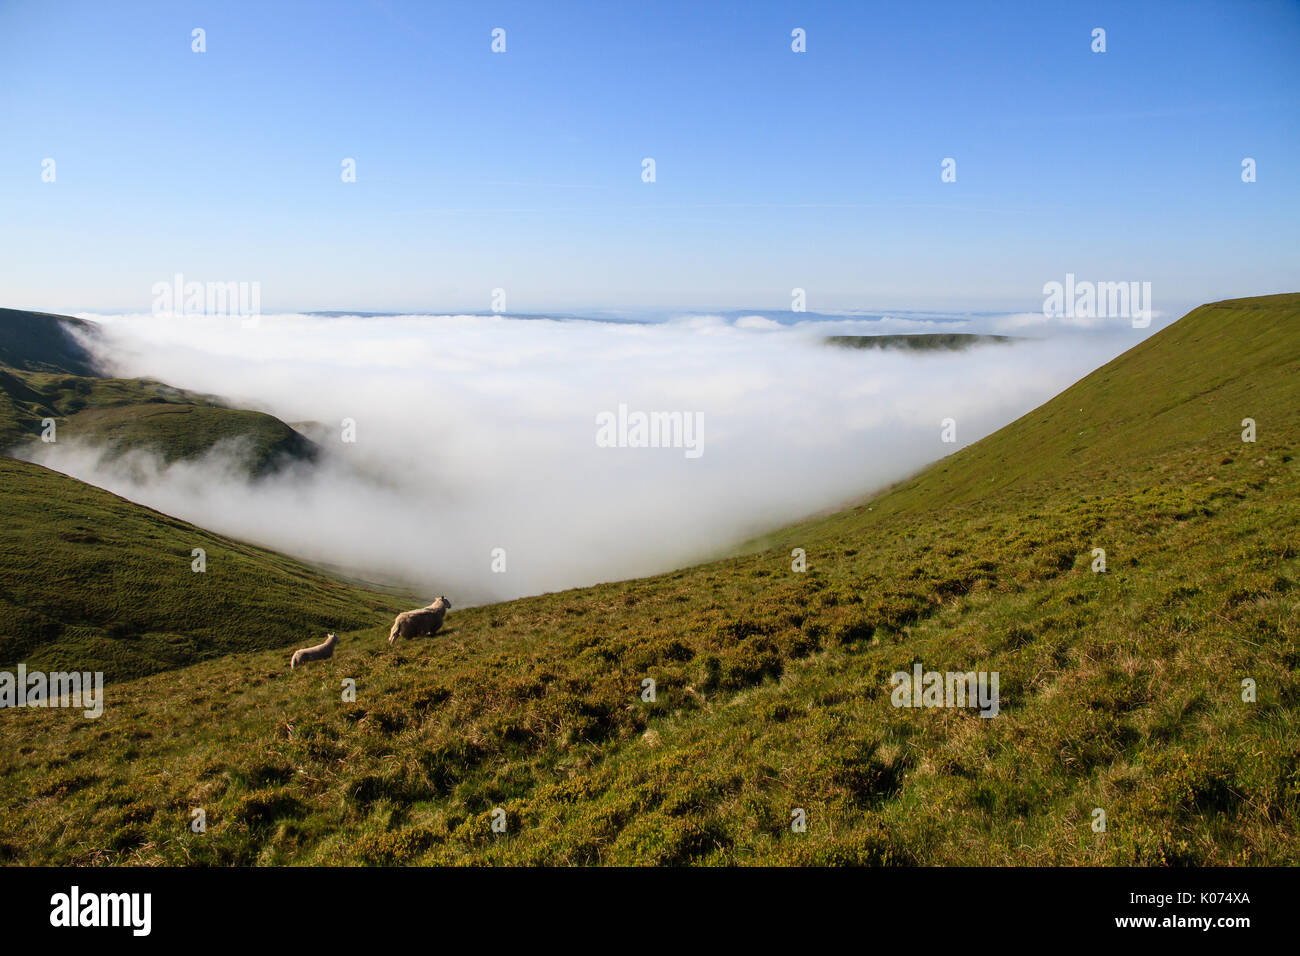 Dos ovejas, una oveja y un cordero, que atraviesa el valle, como la niebla sube desde abajo, en el Parque Nacional de Brecon Beacons en South Wales, REINO UNIDO Foto de stock